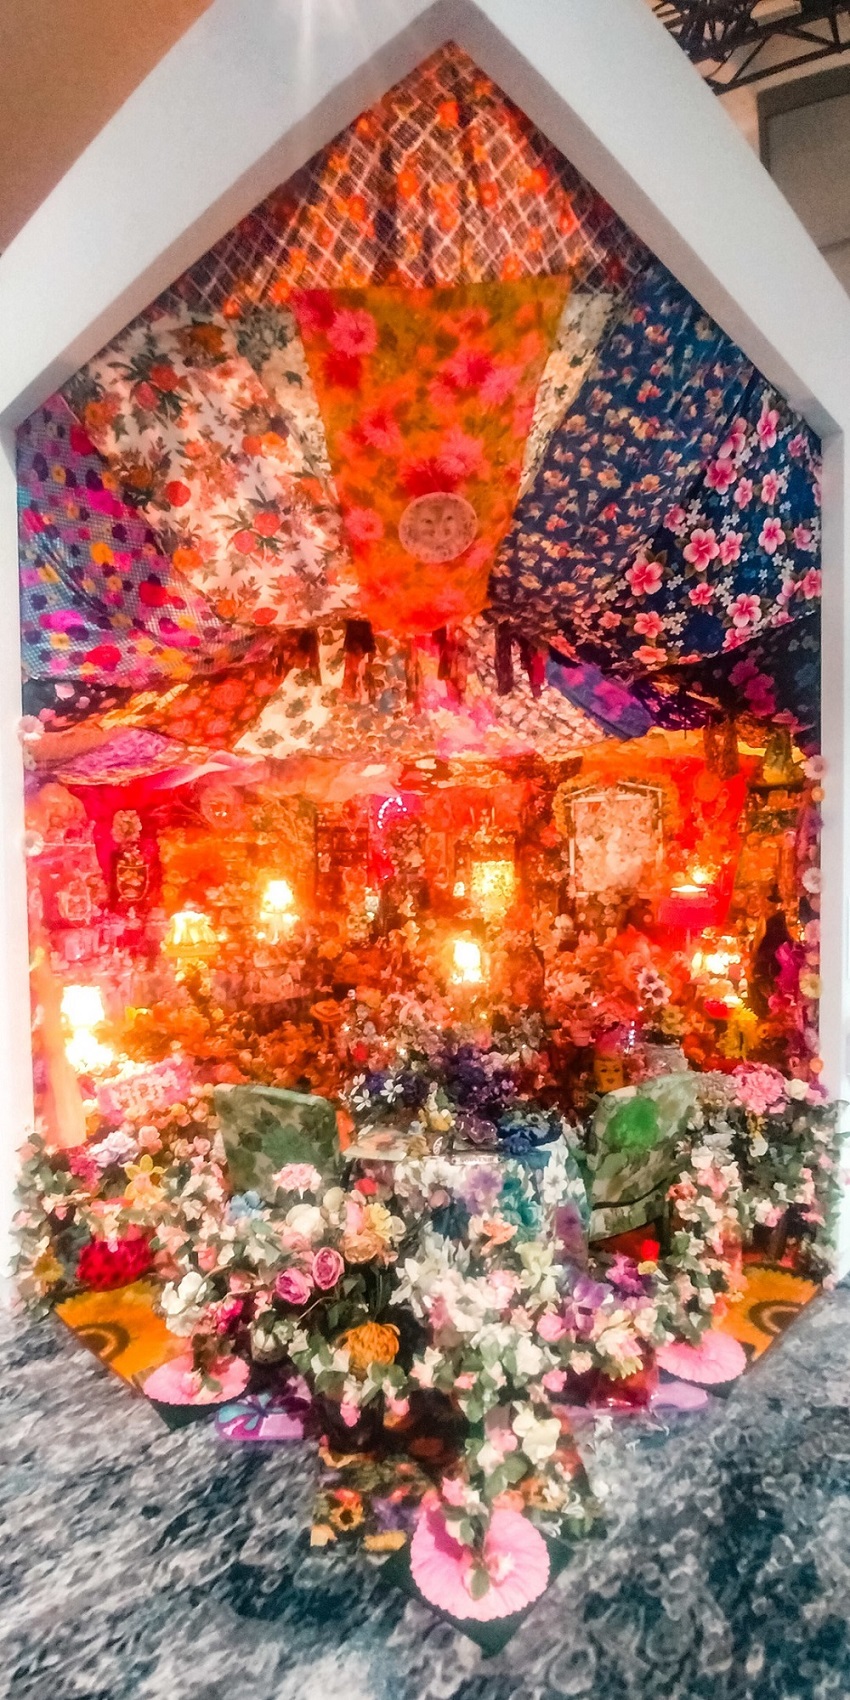 L’installazione The Garden (1996) dell’artista americana Portia Munson, proposta in un riallestimento di P.P.O.W. all’interno della nuova sezione Meridians, rappresenta un’affollata camera da letto di una donna, riempita di simboli tradizionalmente associati al femminile. Photo: Maurita Cardone